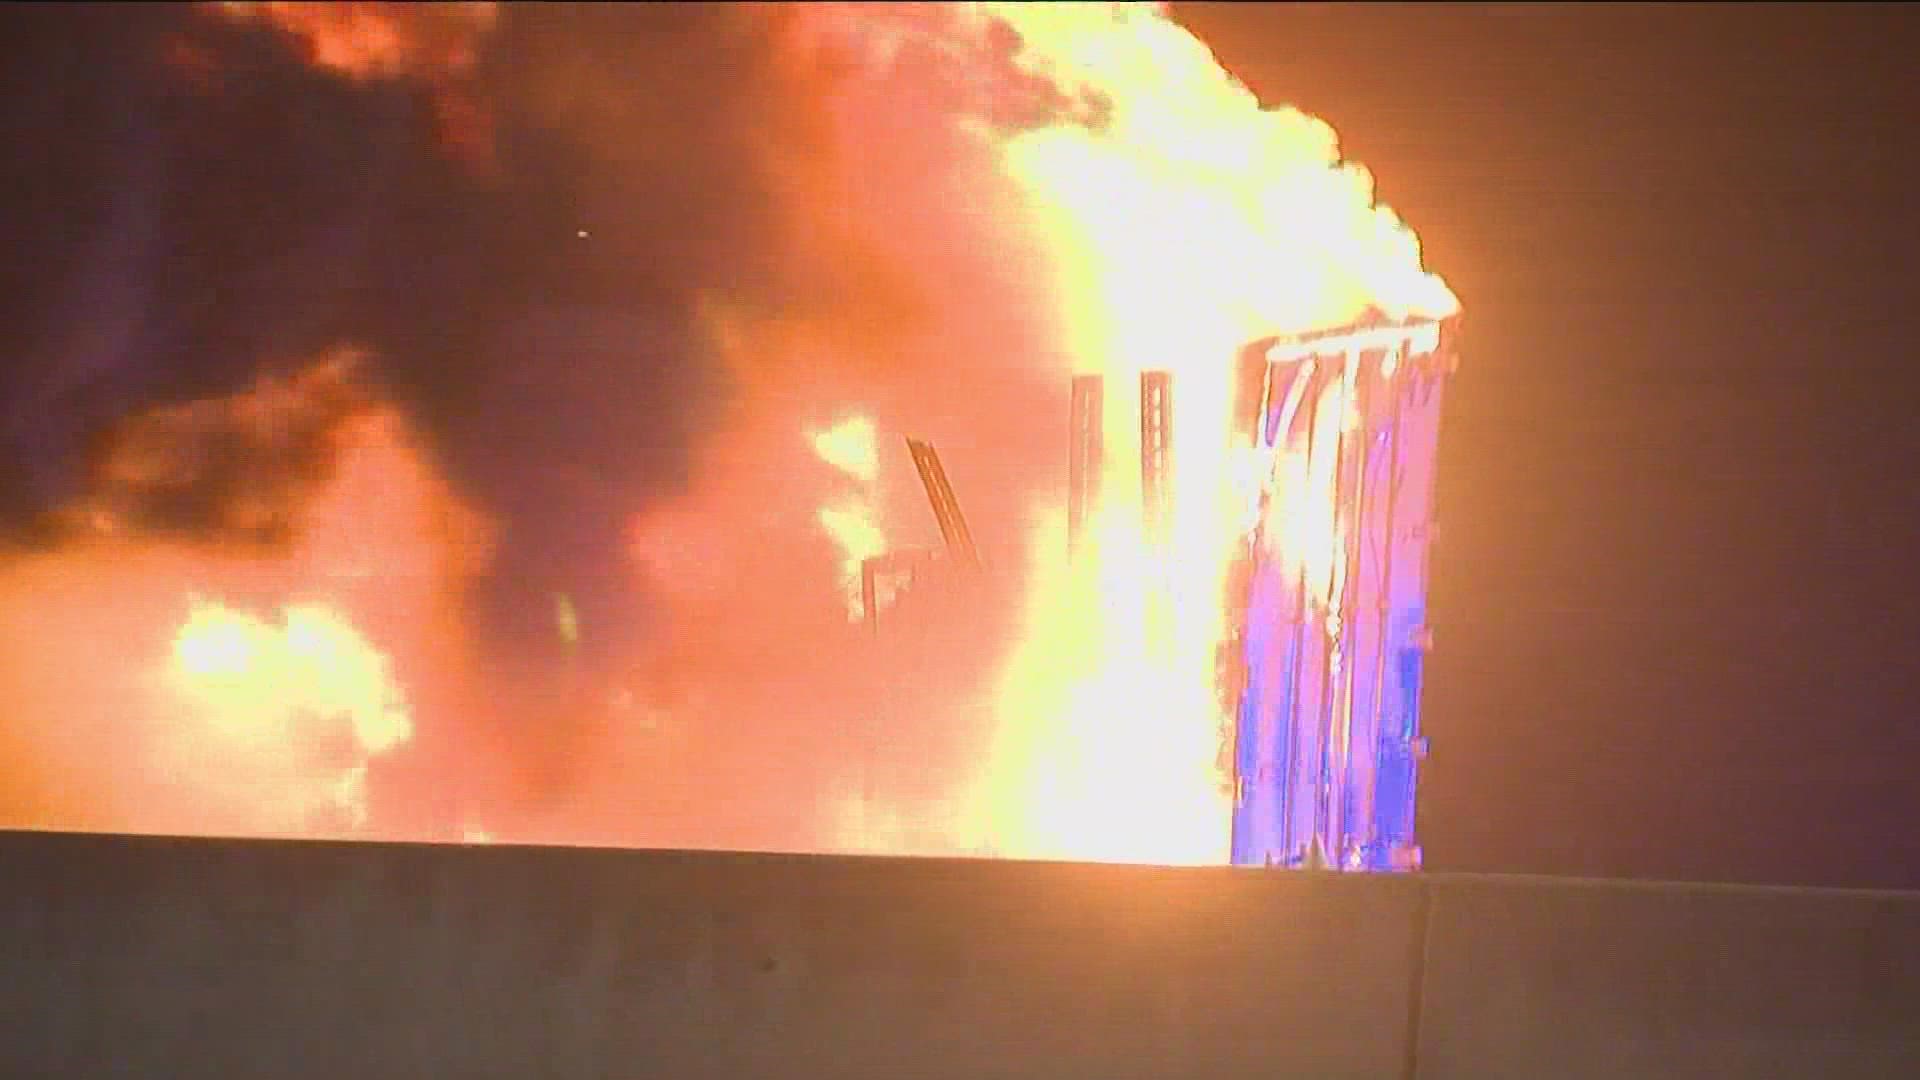 A fiery crash shut down Interstate 35 in Kyle.